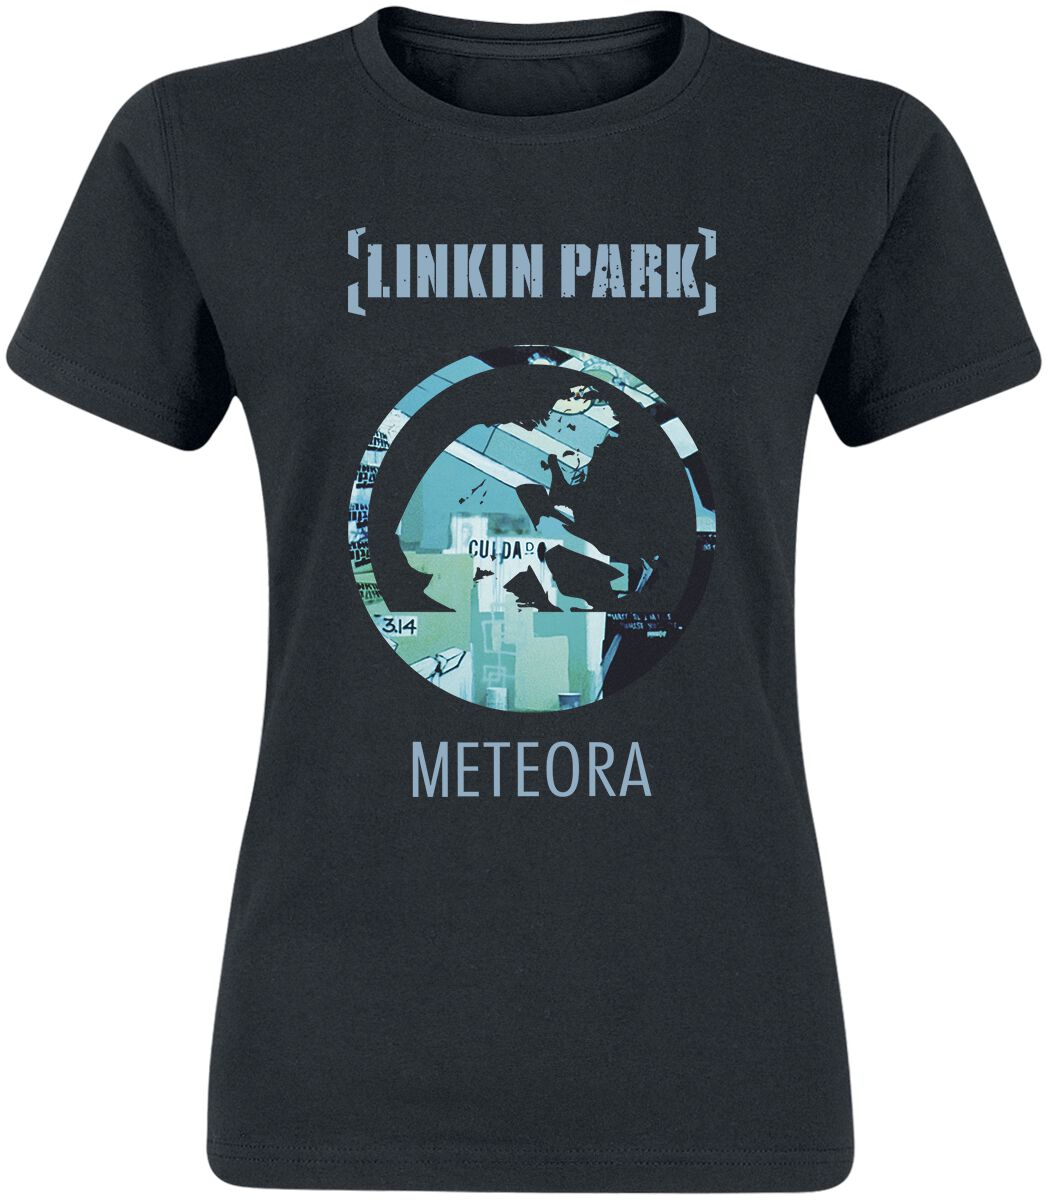 Linkin Park Meteora 20th Anniversary T-Shirt schwarz in L